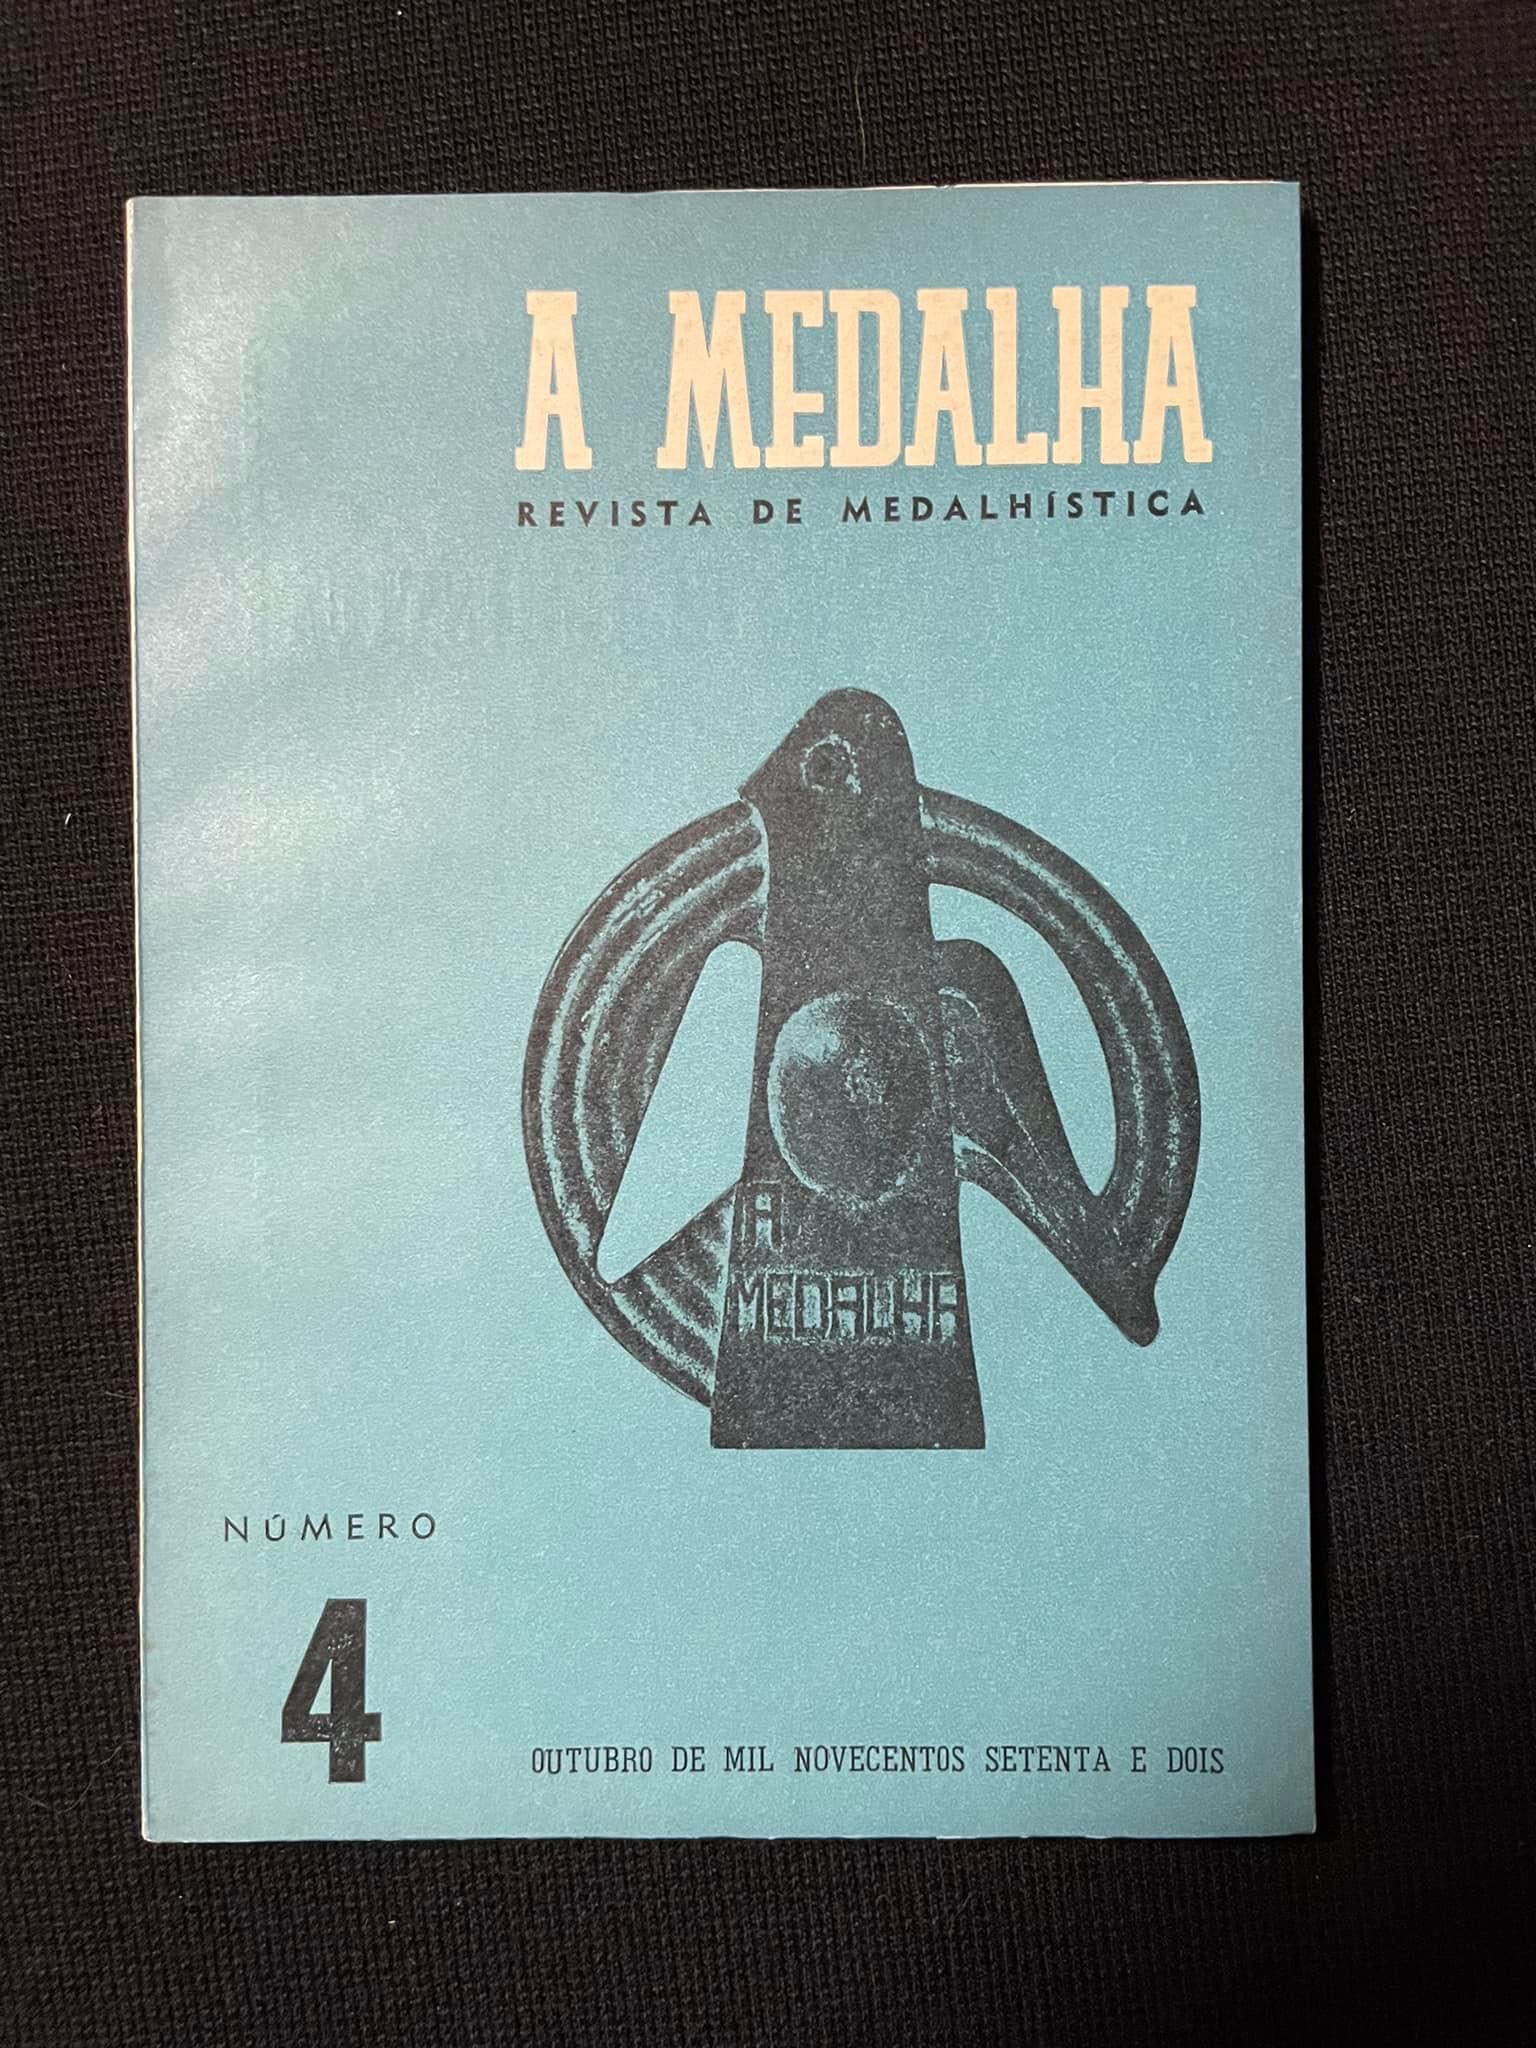 A Medalha - Revista de Medalhística - 12 volumes (portes grátis)